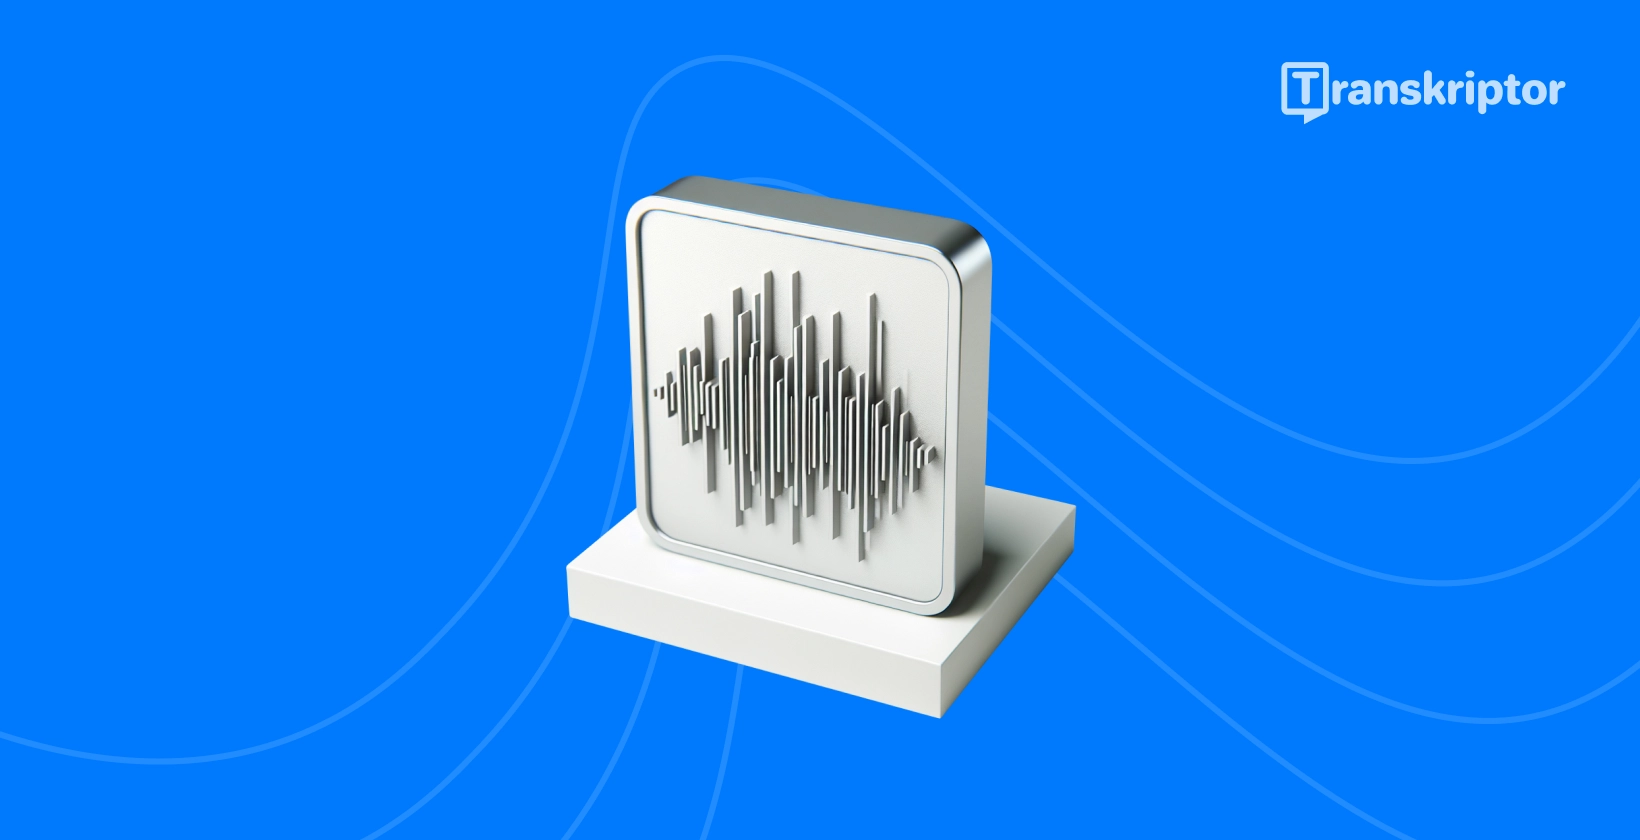 Illustrasjon av lydbølger på en skjerm representerer prosessen med live lydtranskripsjon som beskrevet i veiledningen.